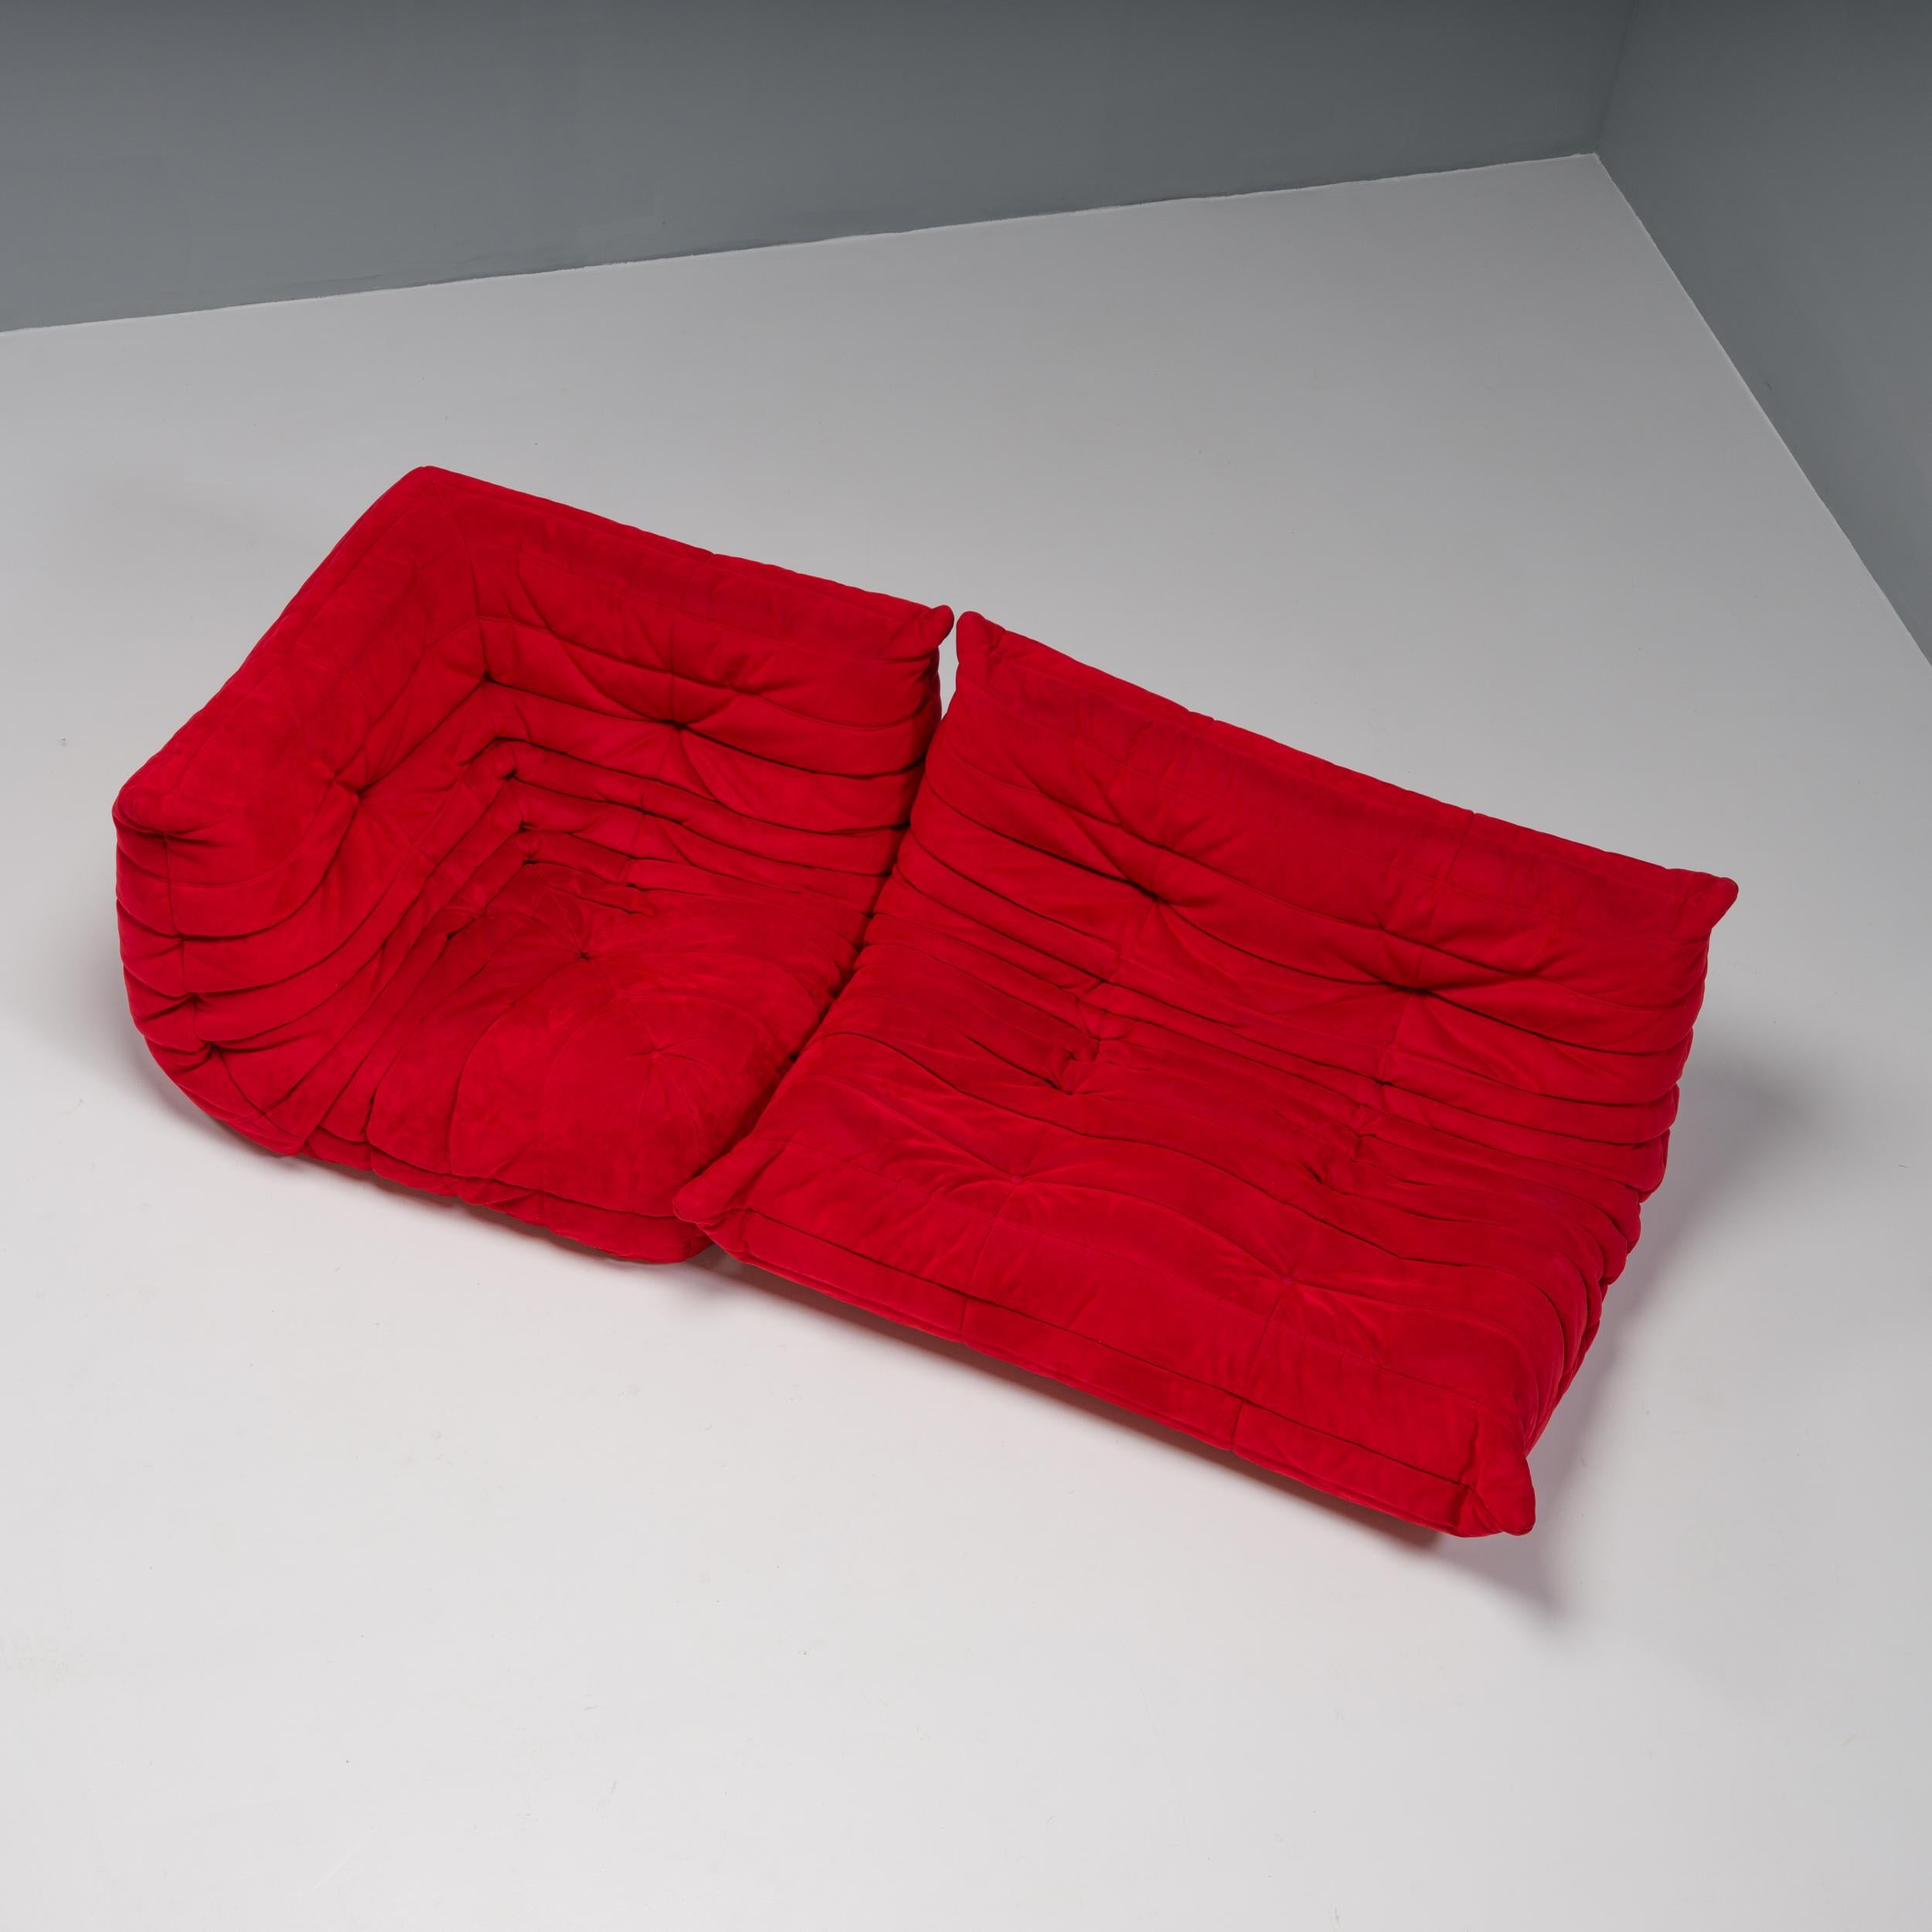 Das ikonische Sofa Togo, das Michel Ducaroy 1973 für Ligne Roset entworfen hat, ist zu einem Designklassiker geworden.

Dieses zweiteilige rote modulare Set ist unglaublich vielseitig und kann zu einem Ecksofa konfiguriert oder separat verwendet